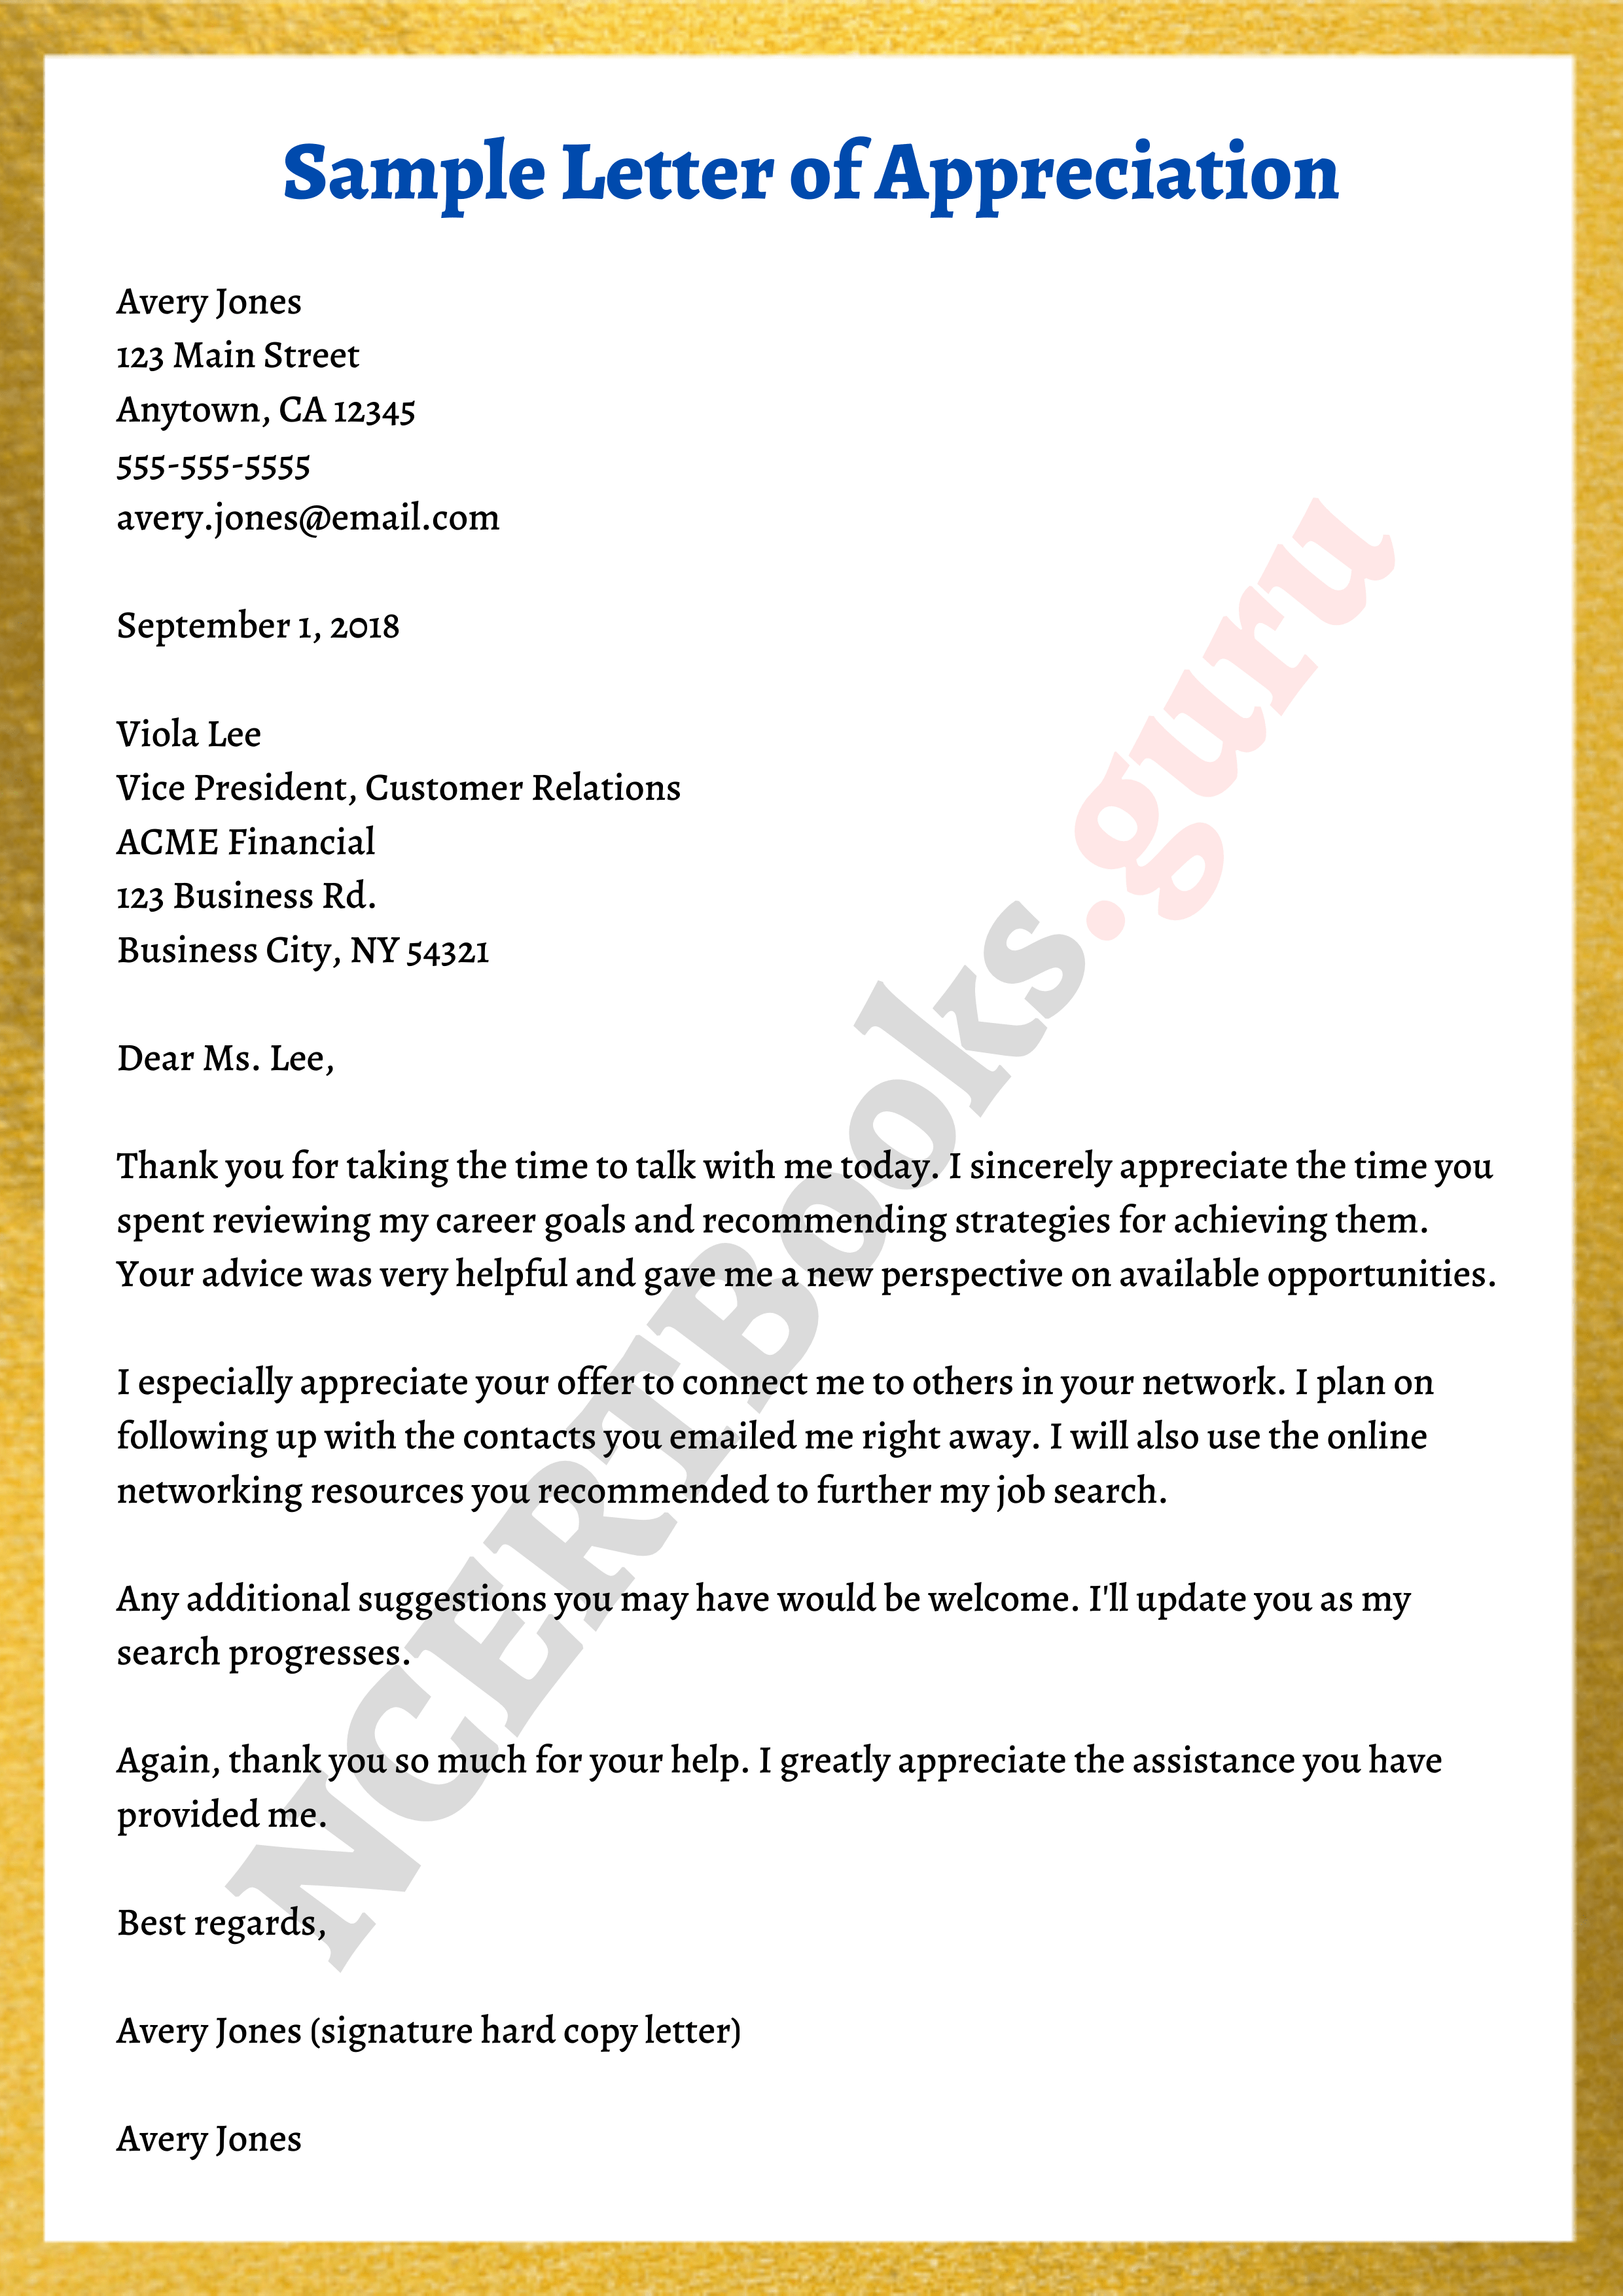 Letter of gratitude sample